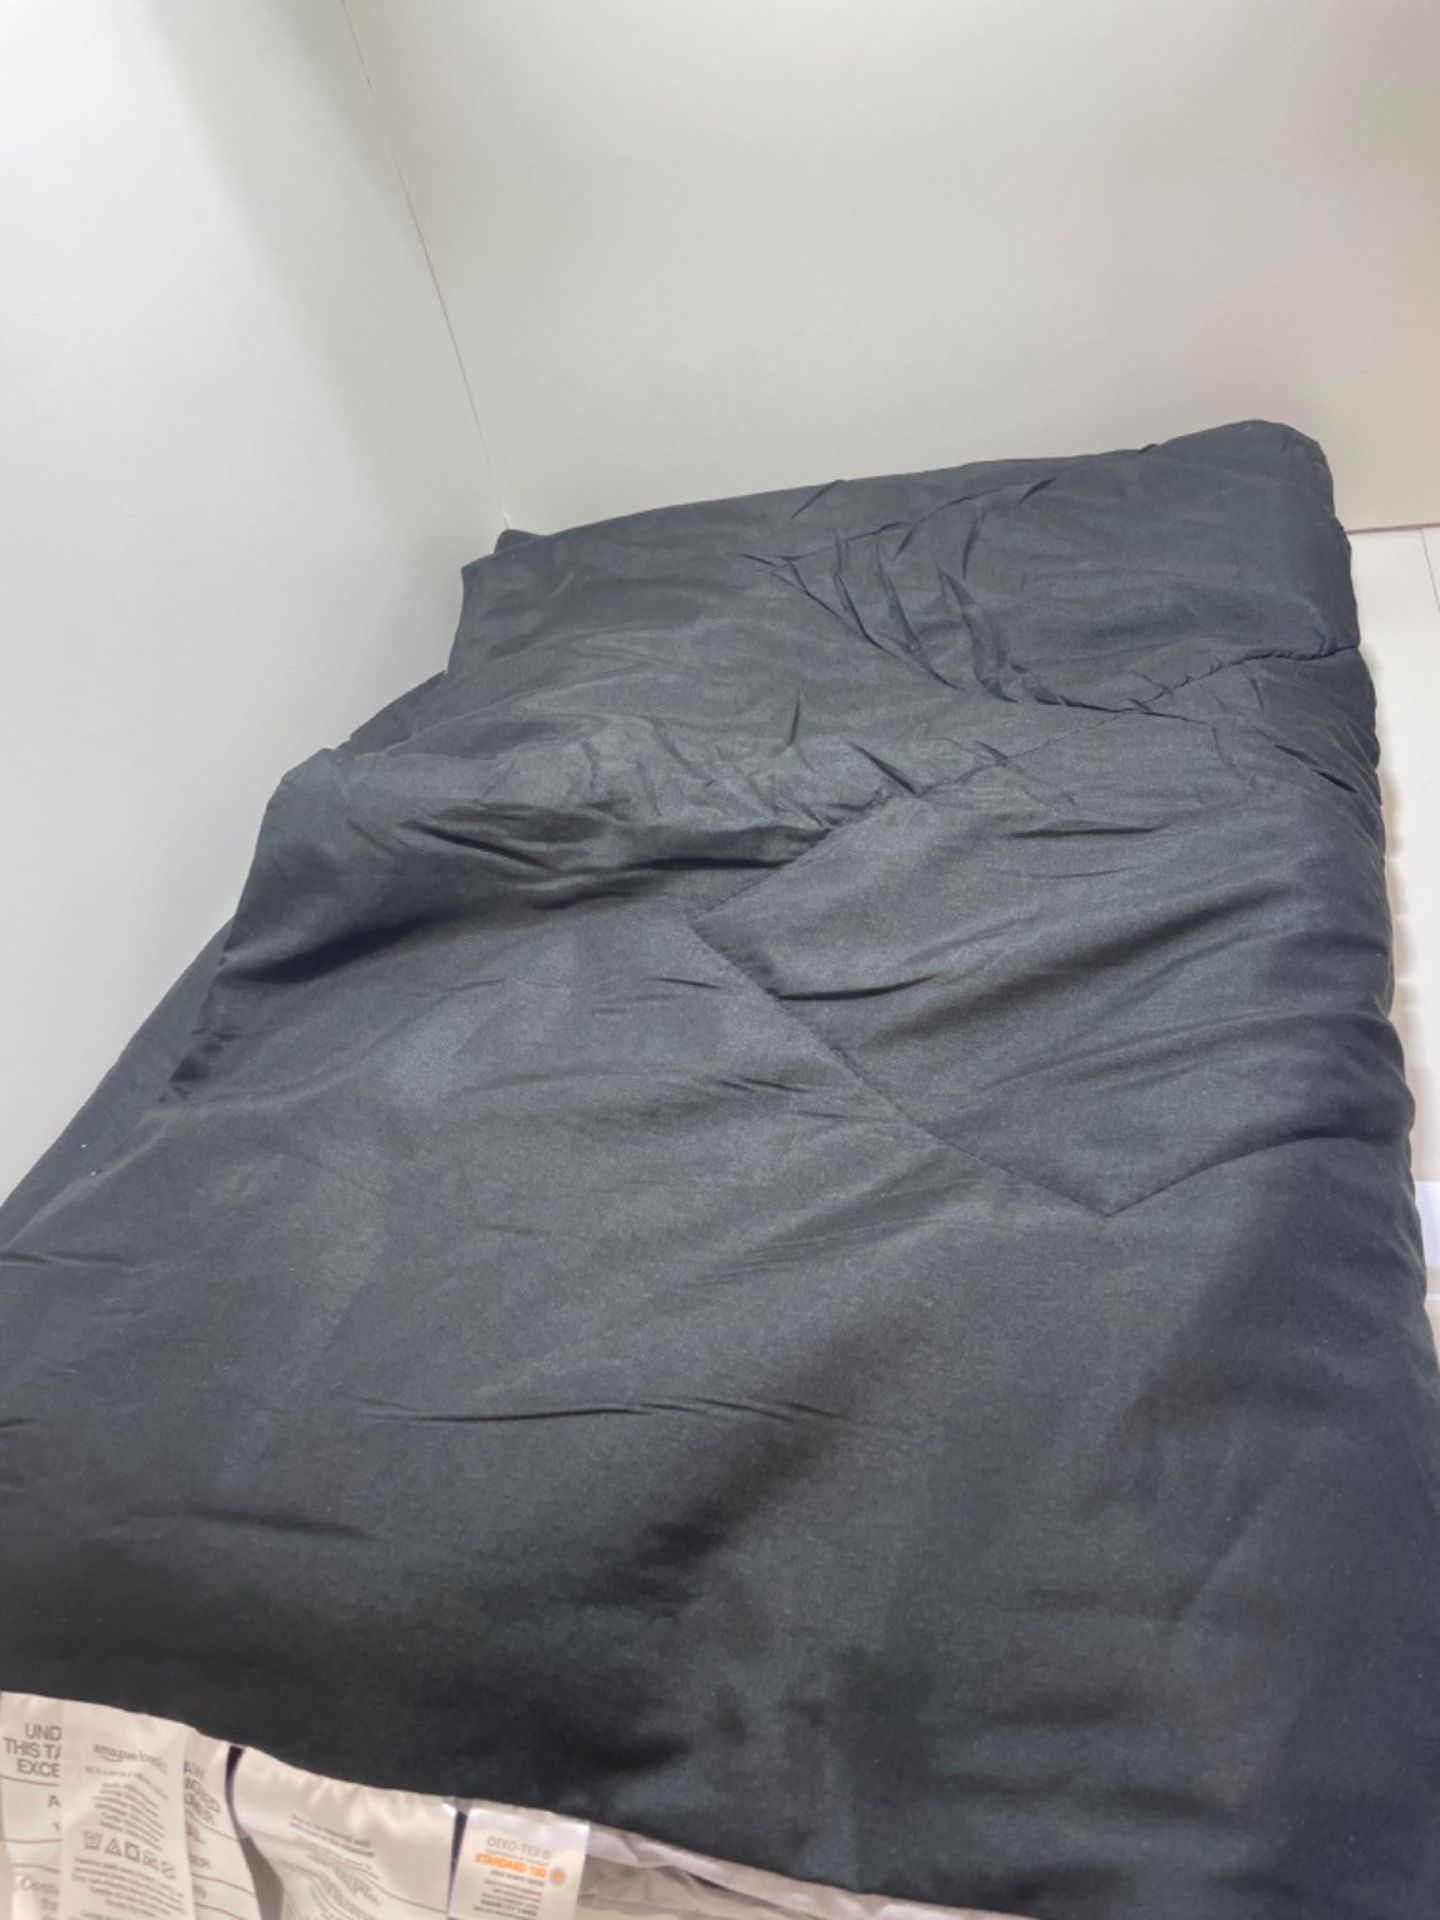 Amazon Basics Reversible Microfiber Comforter Blanket - Twin/Twin XL, Black / Grey - Image 2 of 3